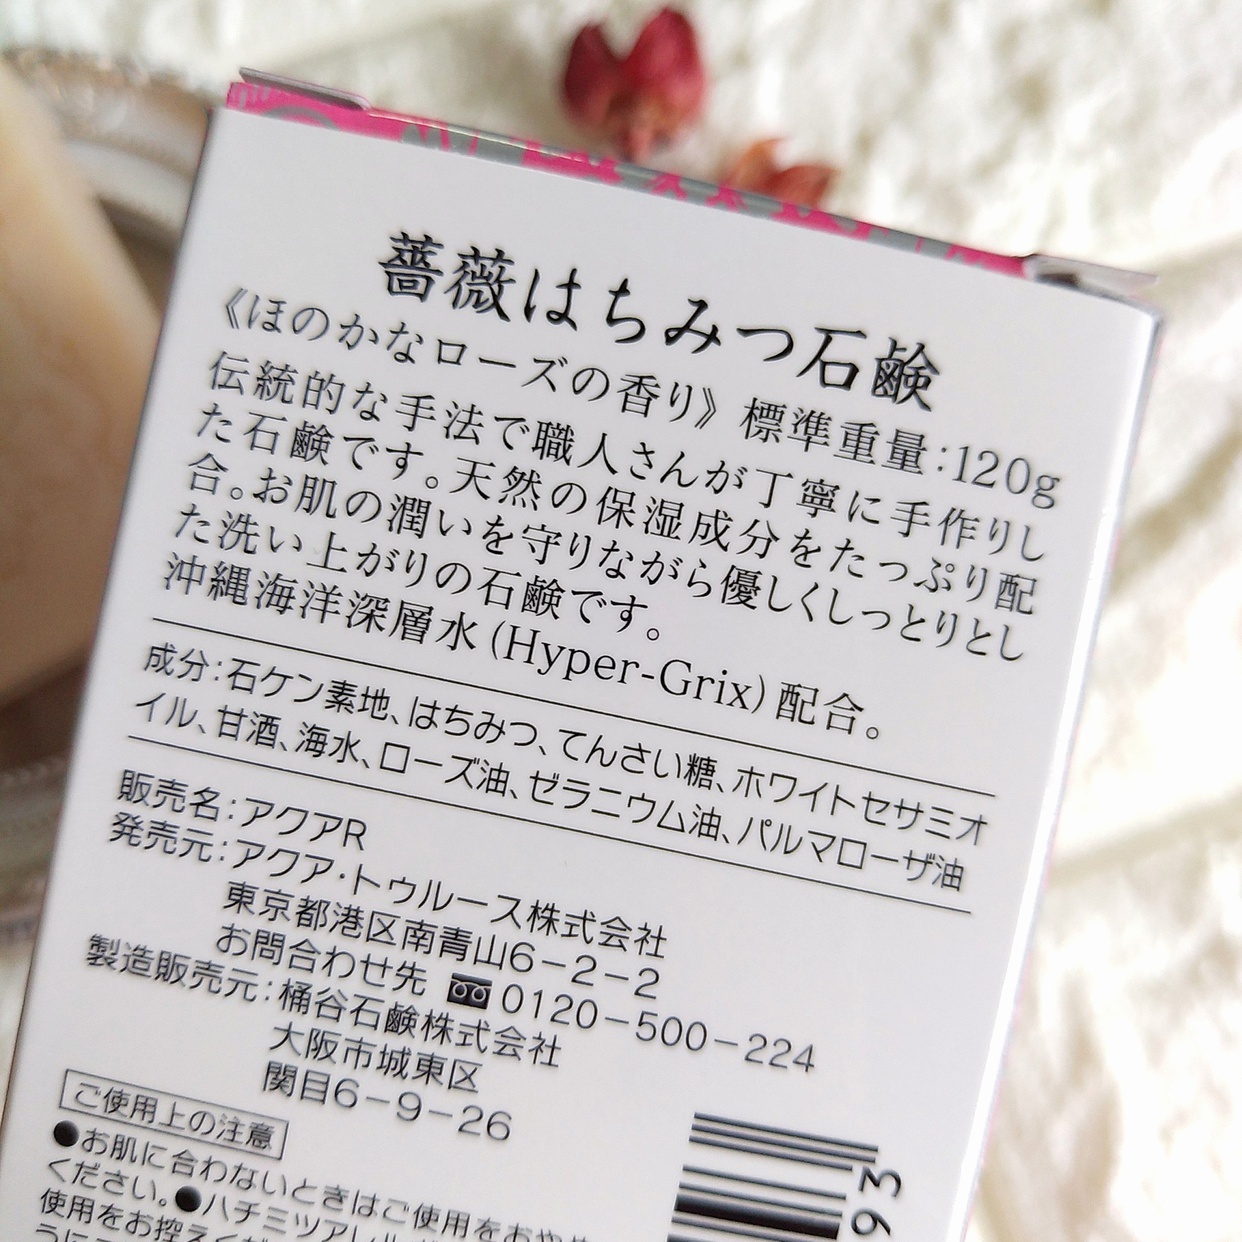 麗凍化粧品(Reitou Cosme) 薔薇はちみつ石鹸を使ったまるもふさんのクチコミ画像6